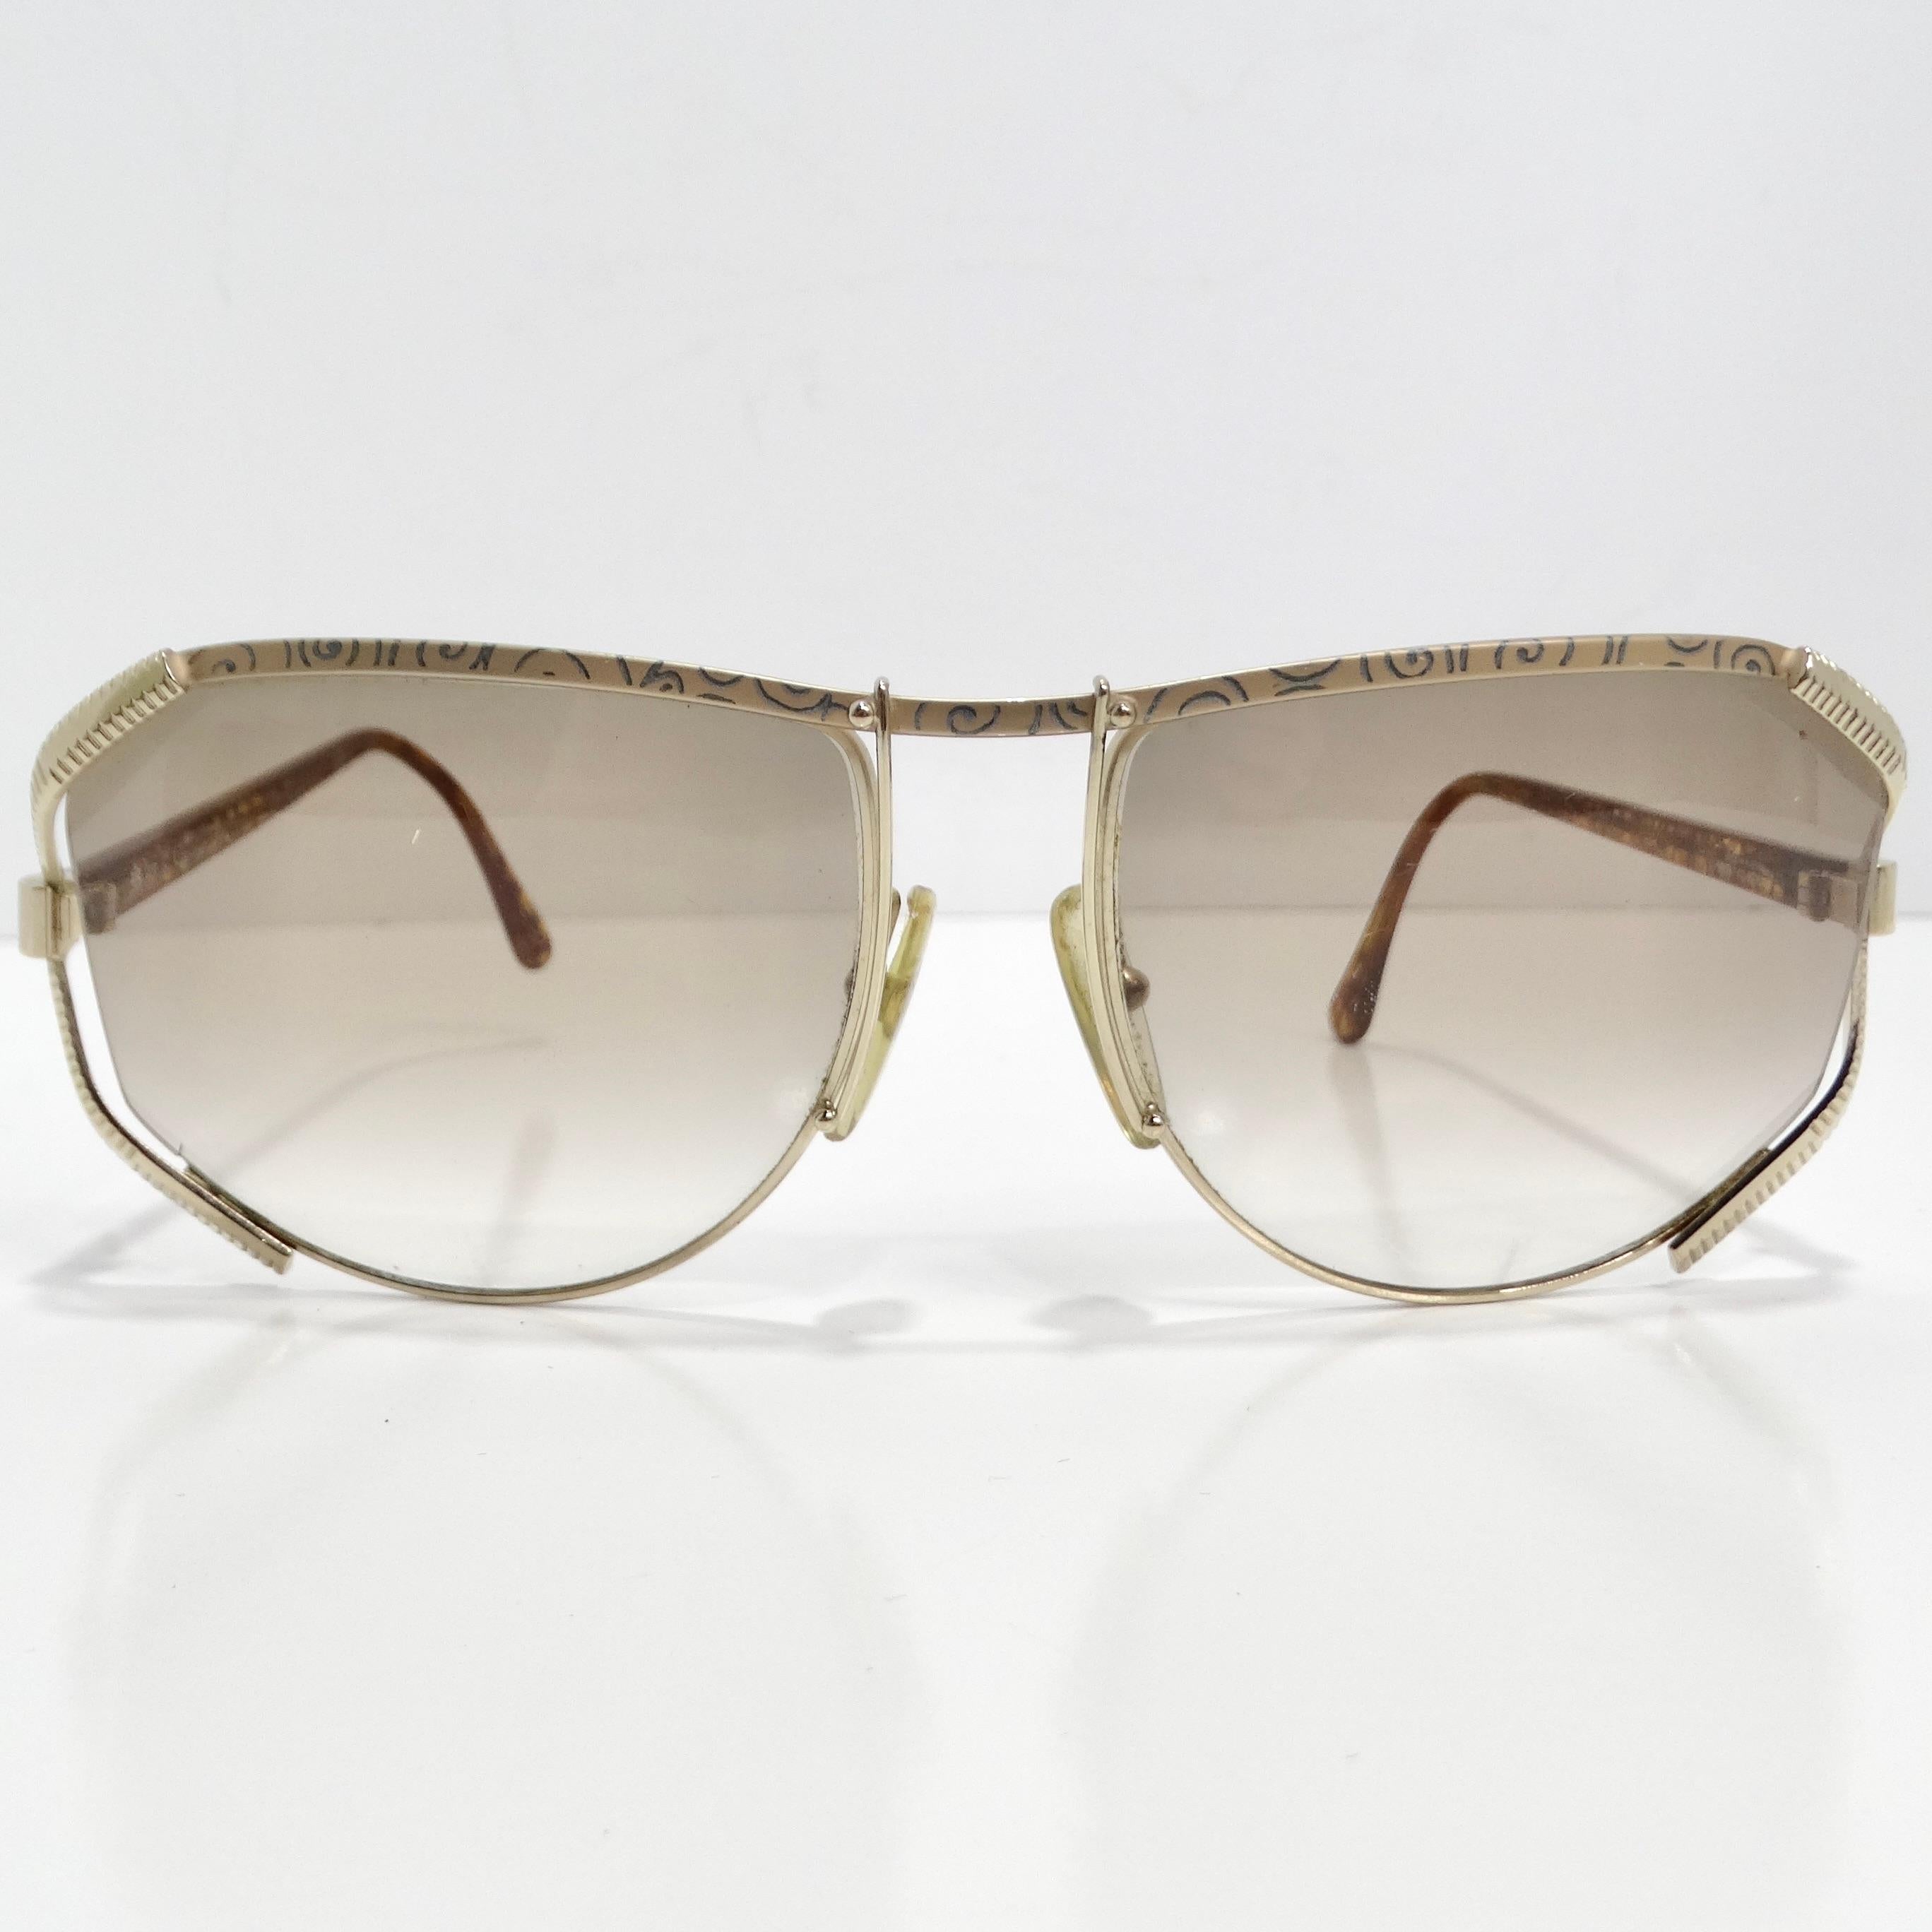 Die Christian Dior 1980s Gold Tone Aviator Sunglasses ist ein atemberaubendes Vintage-Stück, das den Glamour und die Raffinesse dieser Ära verkörpert. Diese kultige Sonnenbrille besticht durch eine zeitlose Pilotenbrillen-Silhouette mit erlesenen